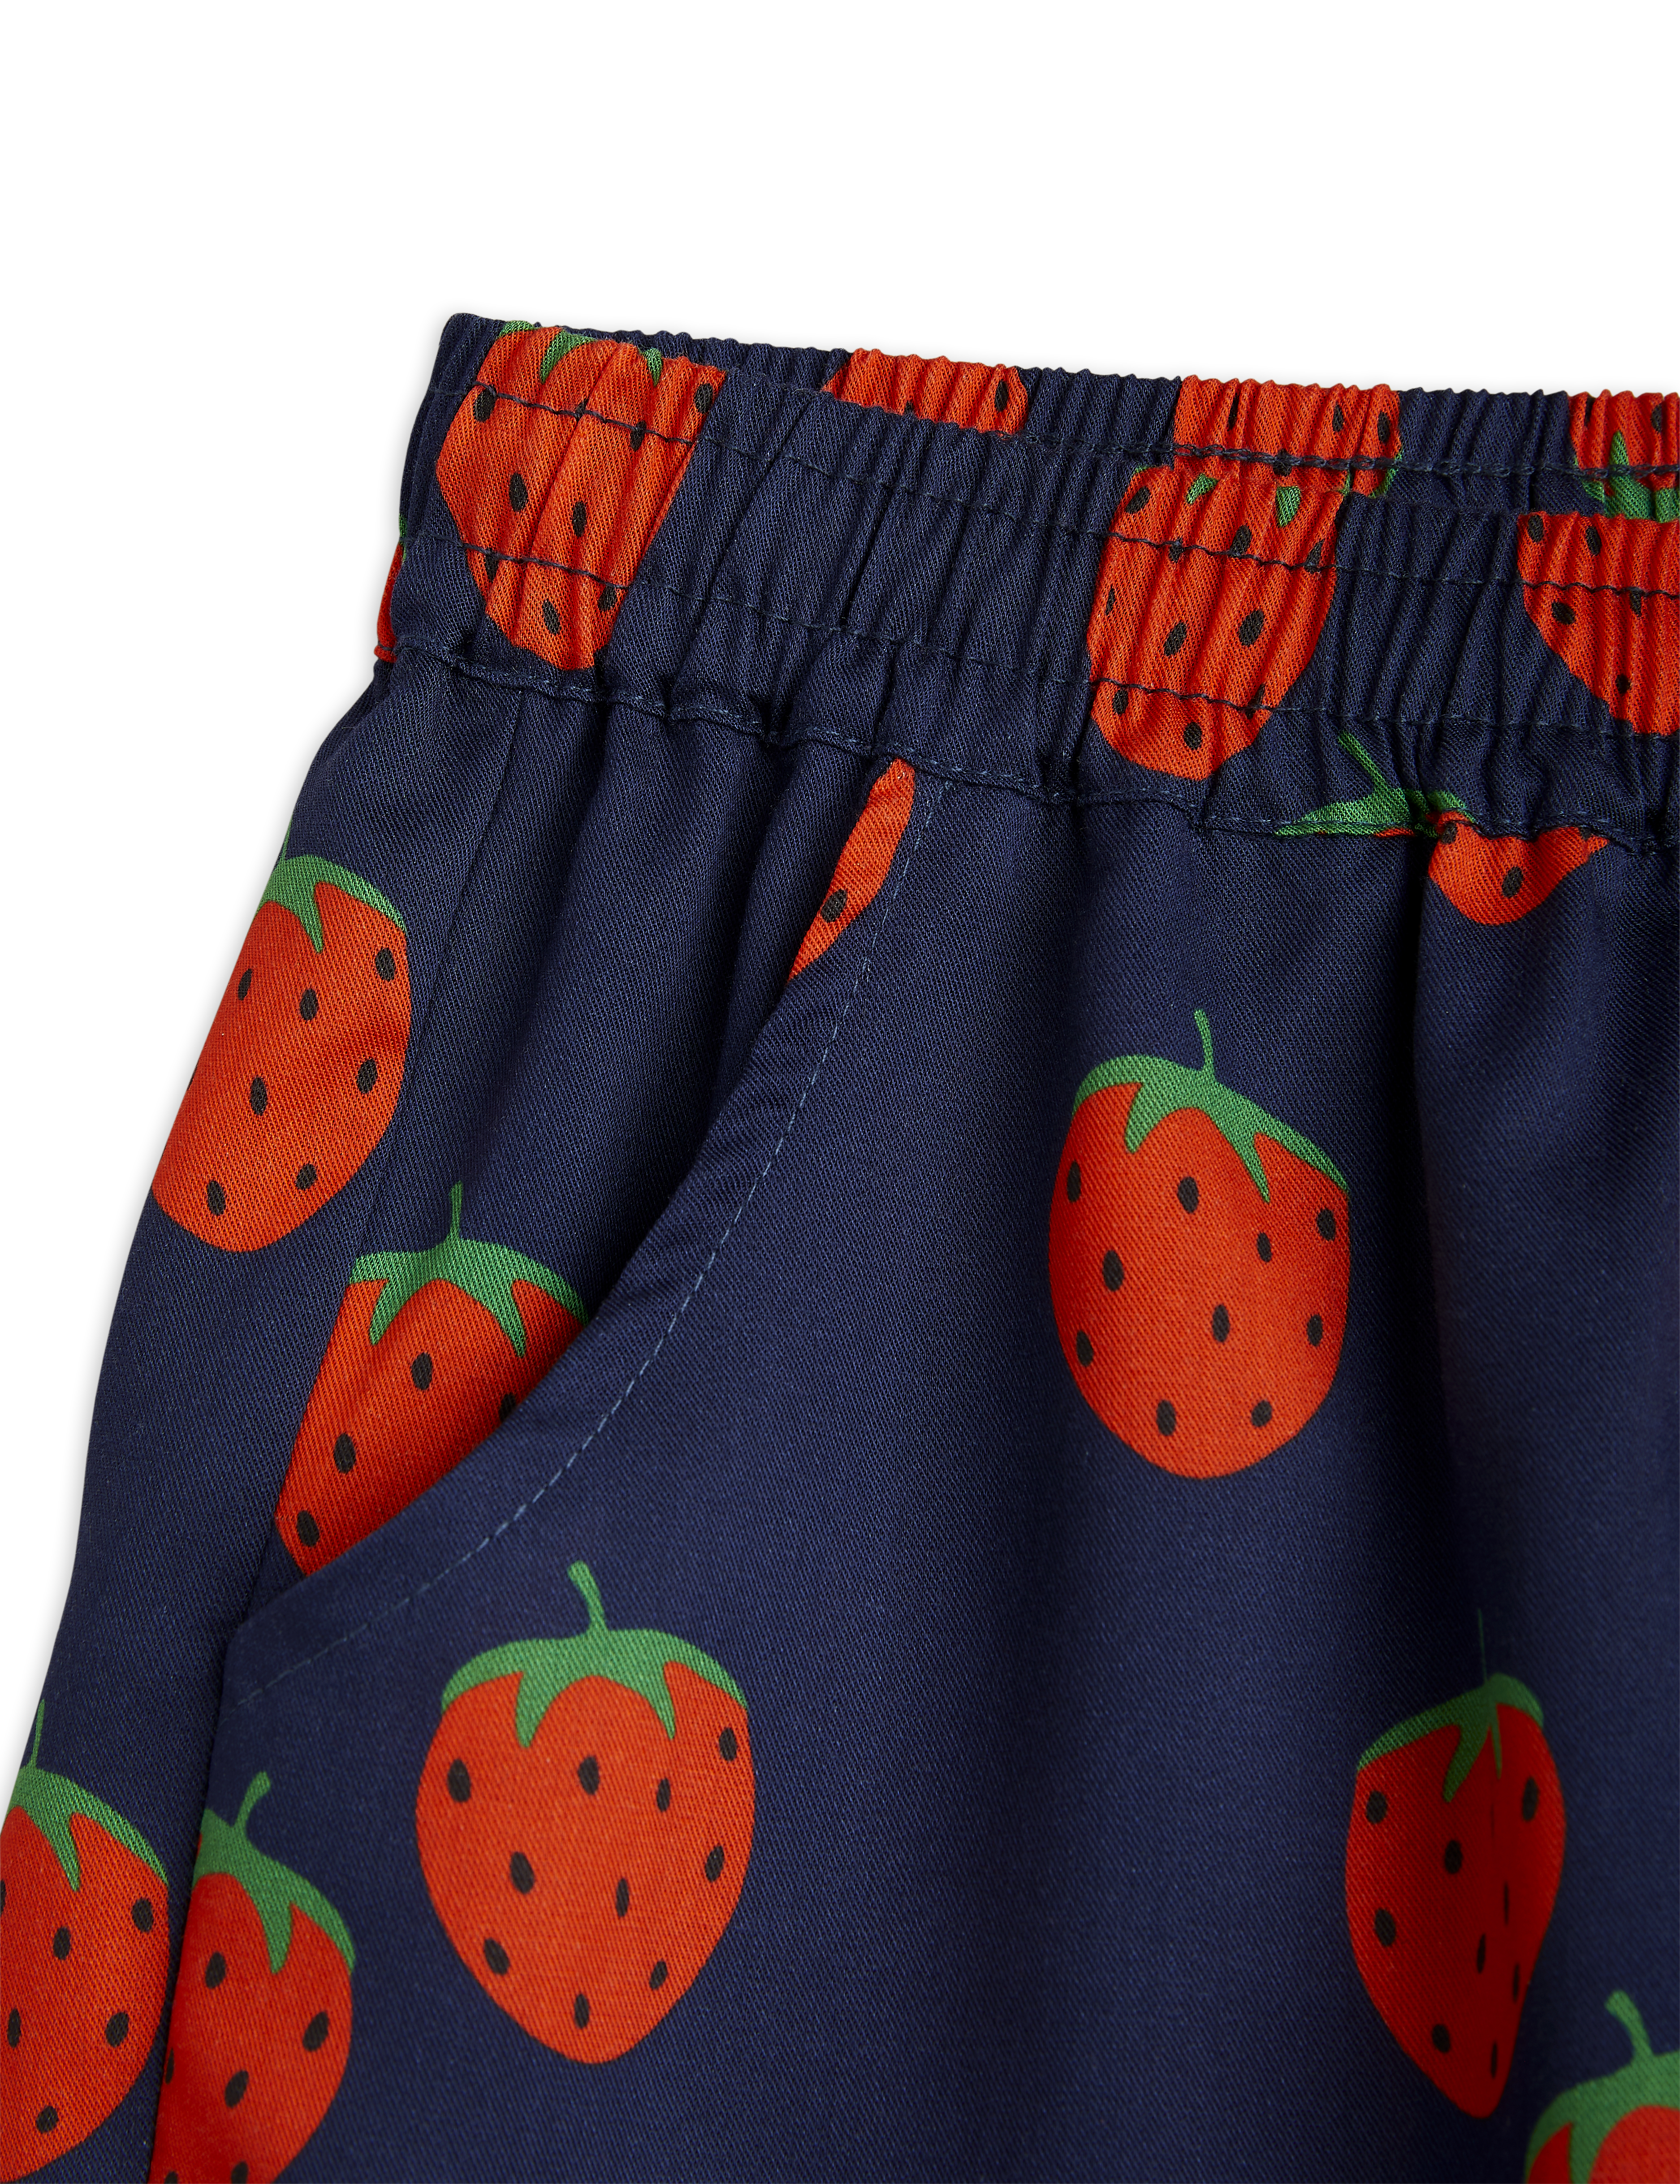 MINI RODINI Shorts 'Strawberries' - Gr. 80/86 & 128/134